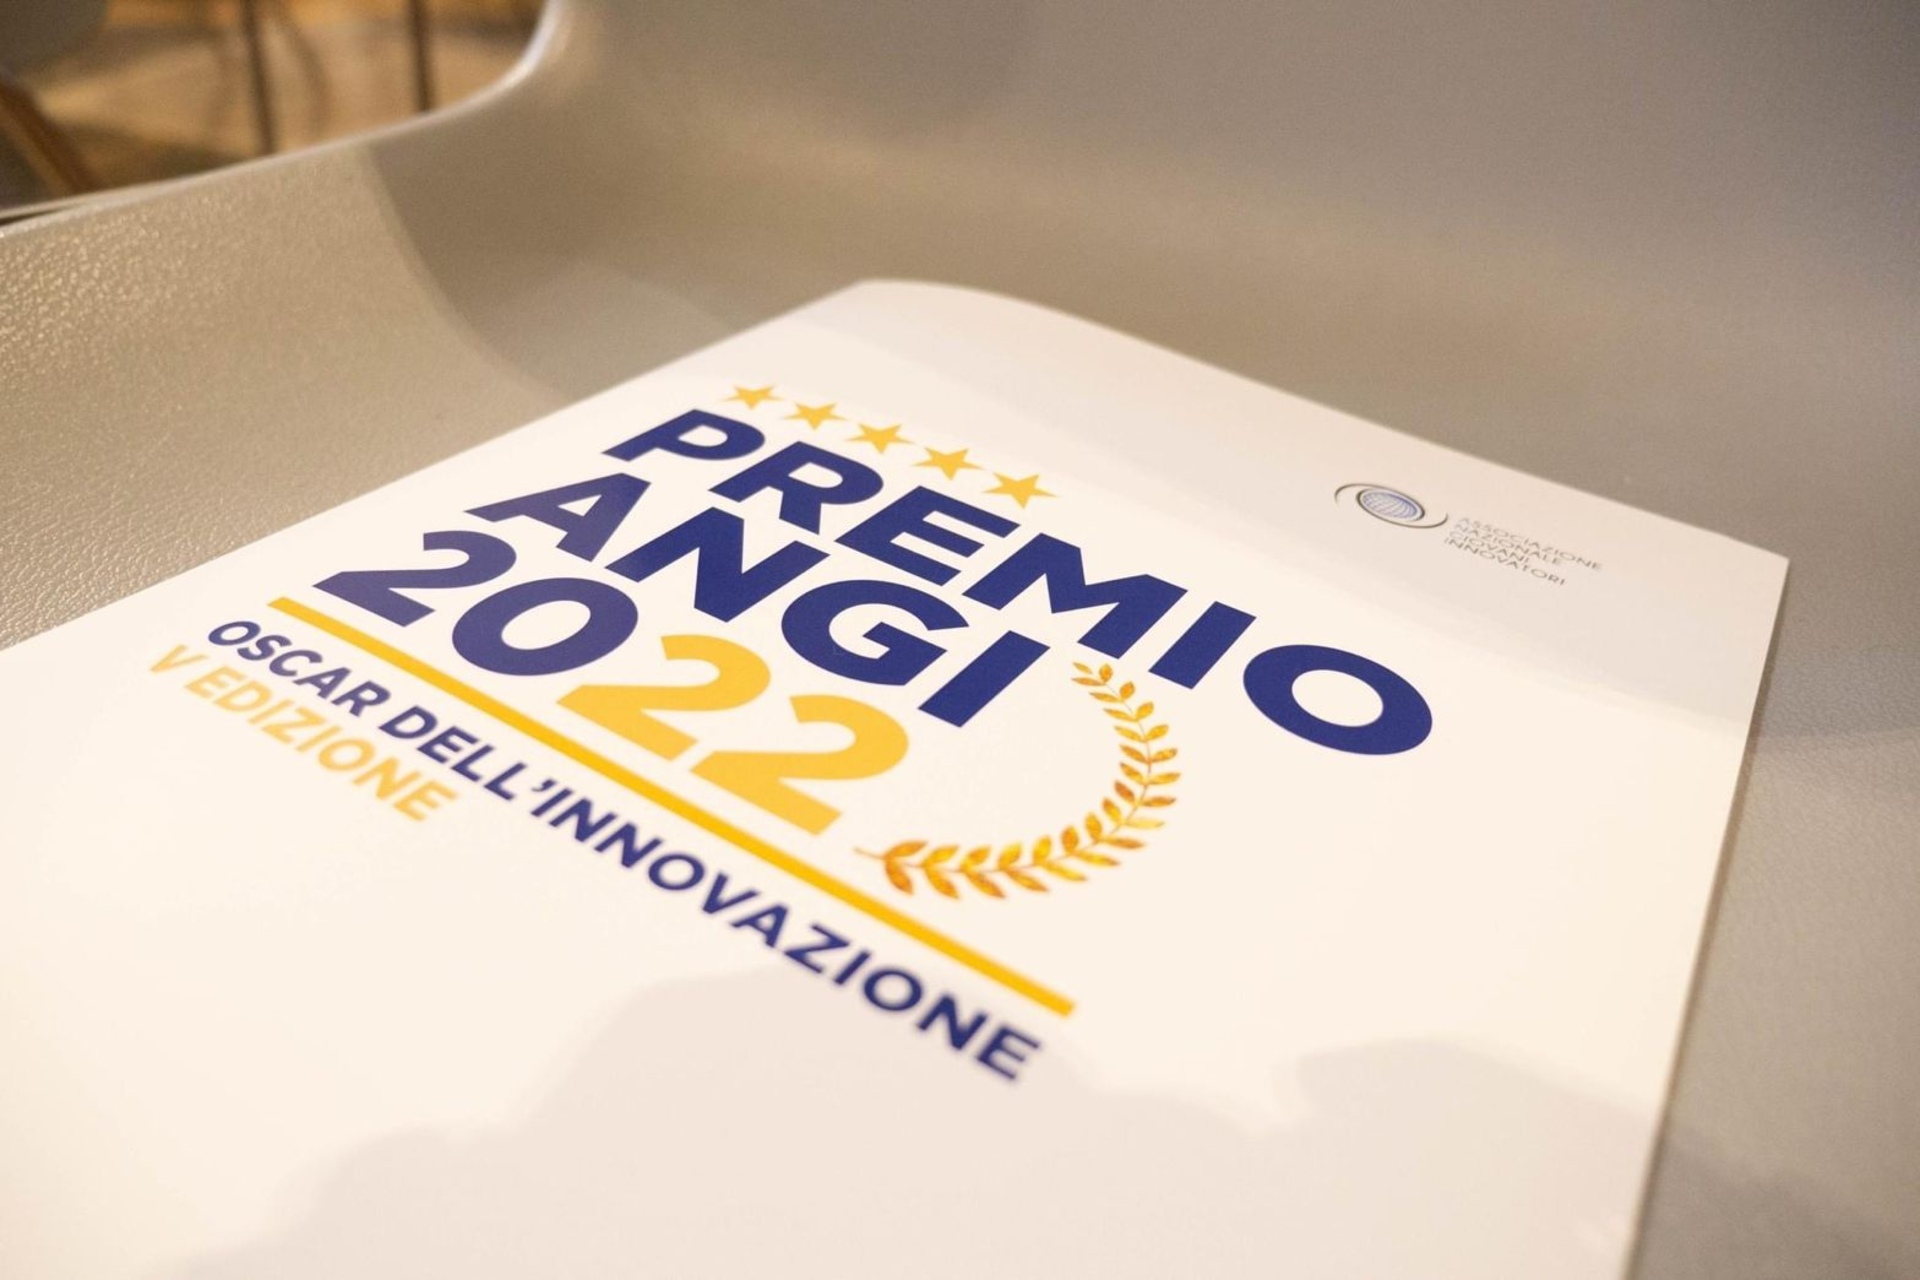 "ລາງວັນ ANGI - Oscar of Innovation" ຄັ້ງທີ 2022 ຈະຈັດຂຶ້ນທີ່ Ara Pacis ໃນ Rome ໃນວັນທີ XNUMX ທັນວາ XNUMX.